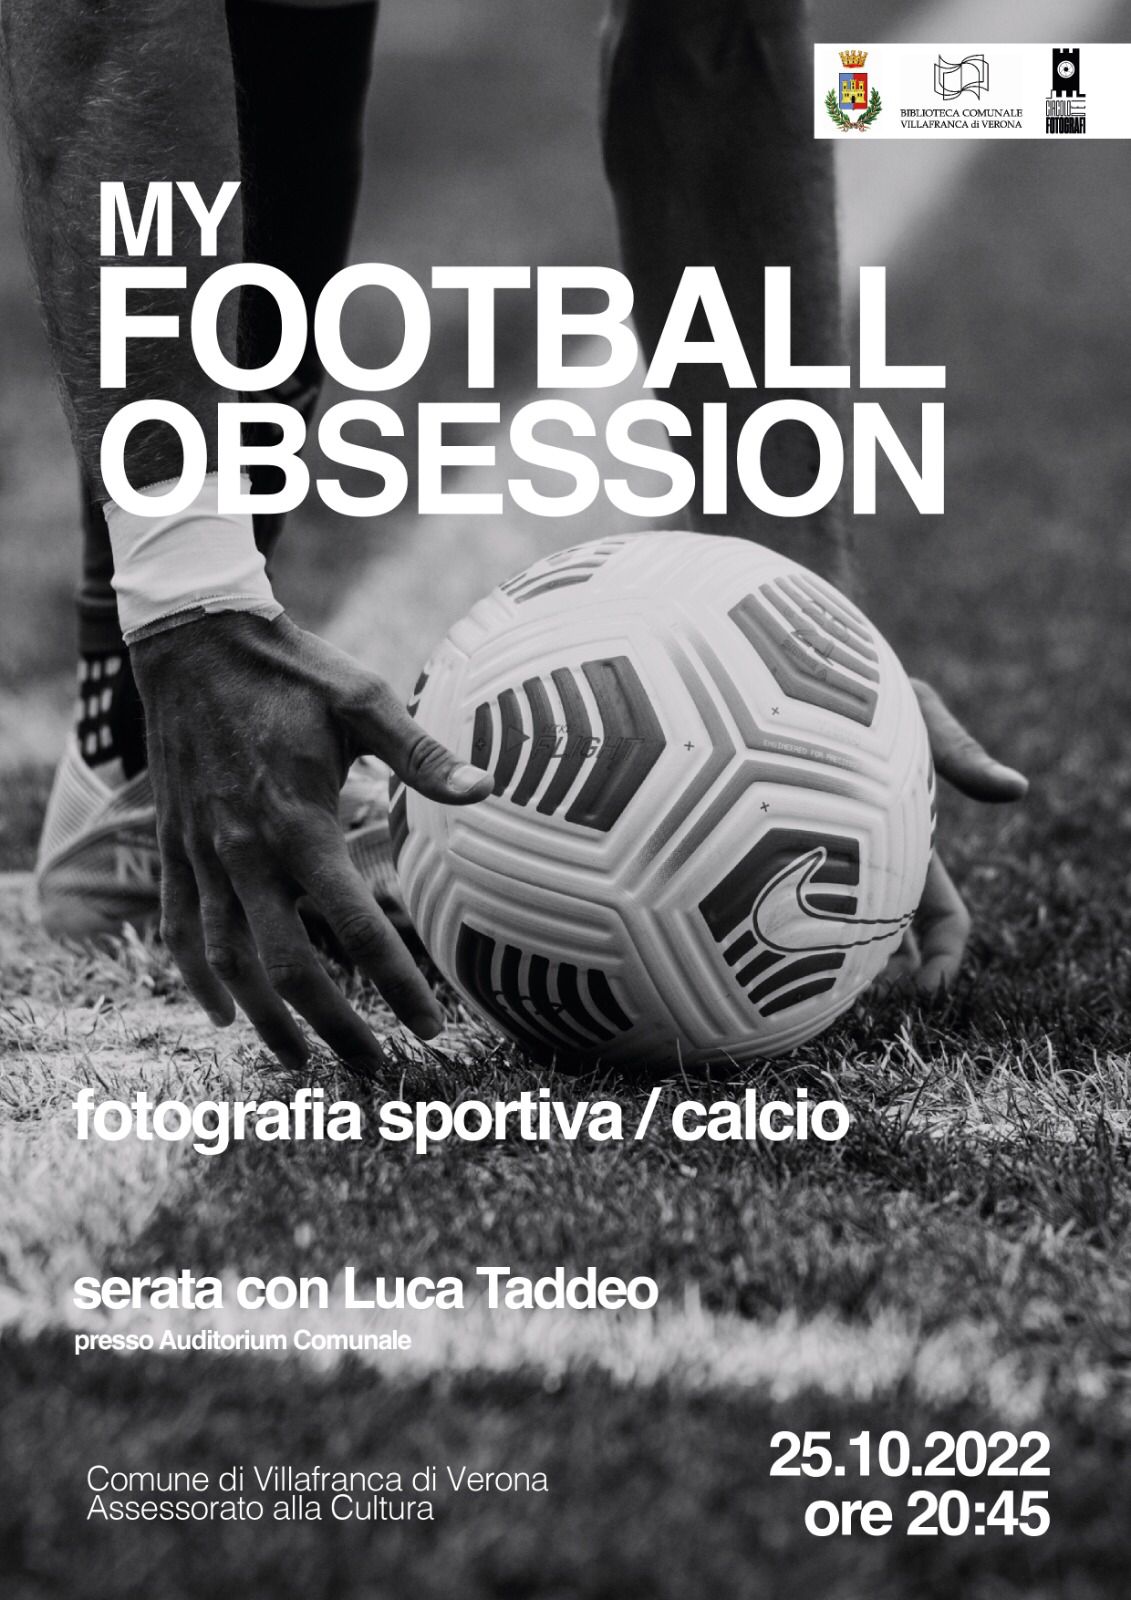 Luca Taddeo e la “football obsession”: incontro questa sera sulla fotografia sportiva